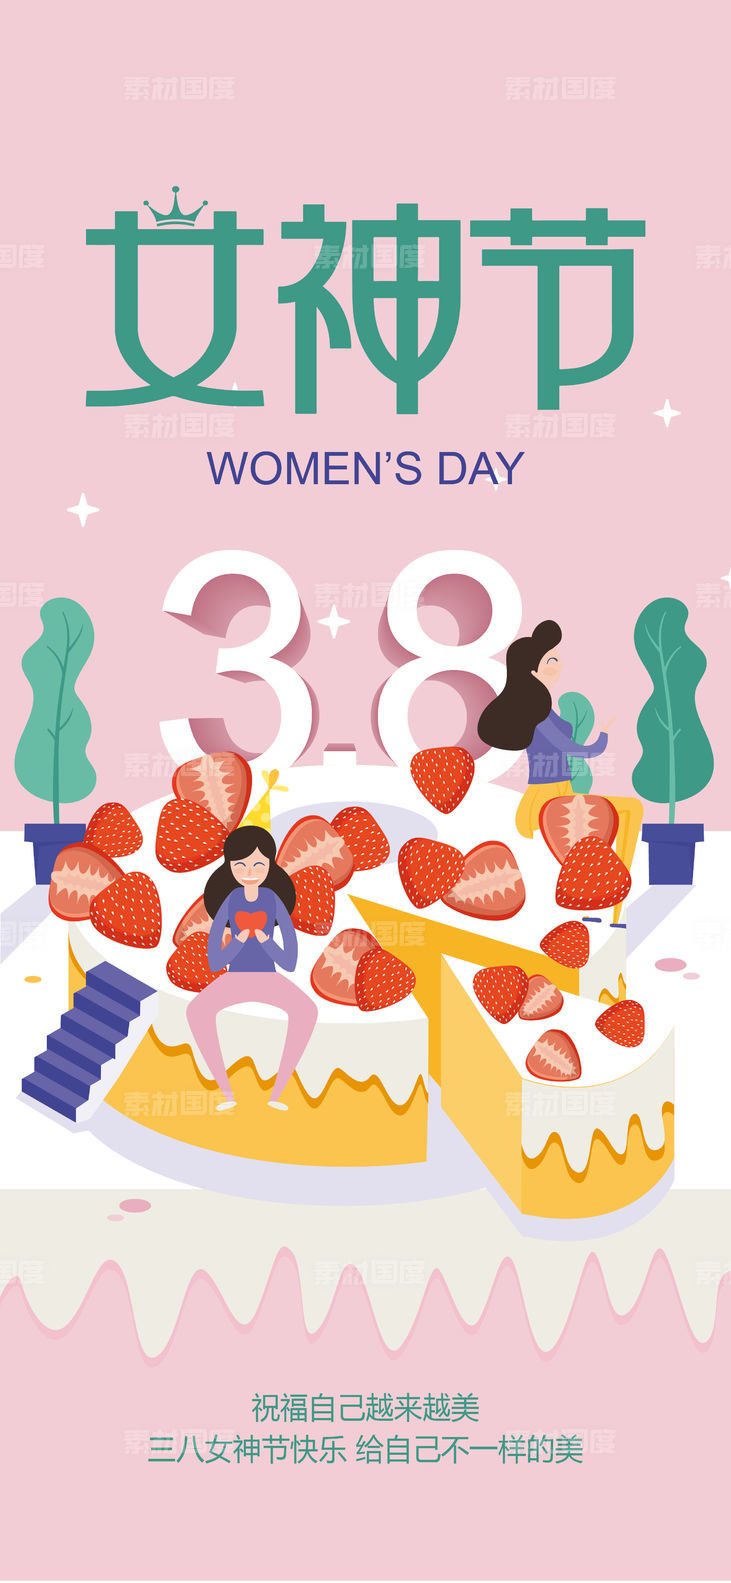 三八妇女节女神节治愈粉插画风格海报